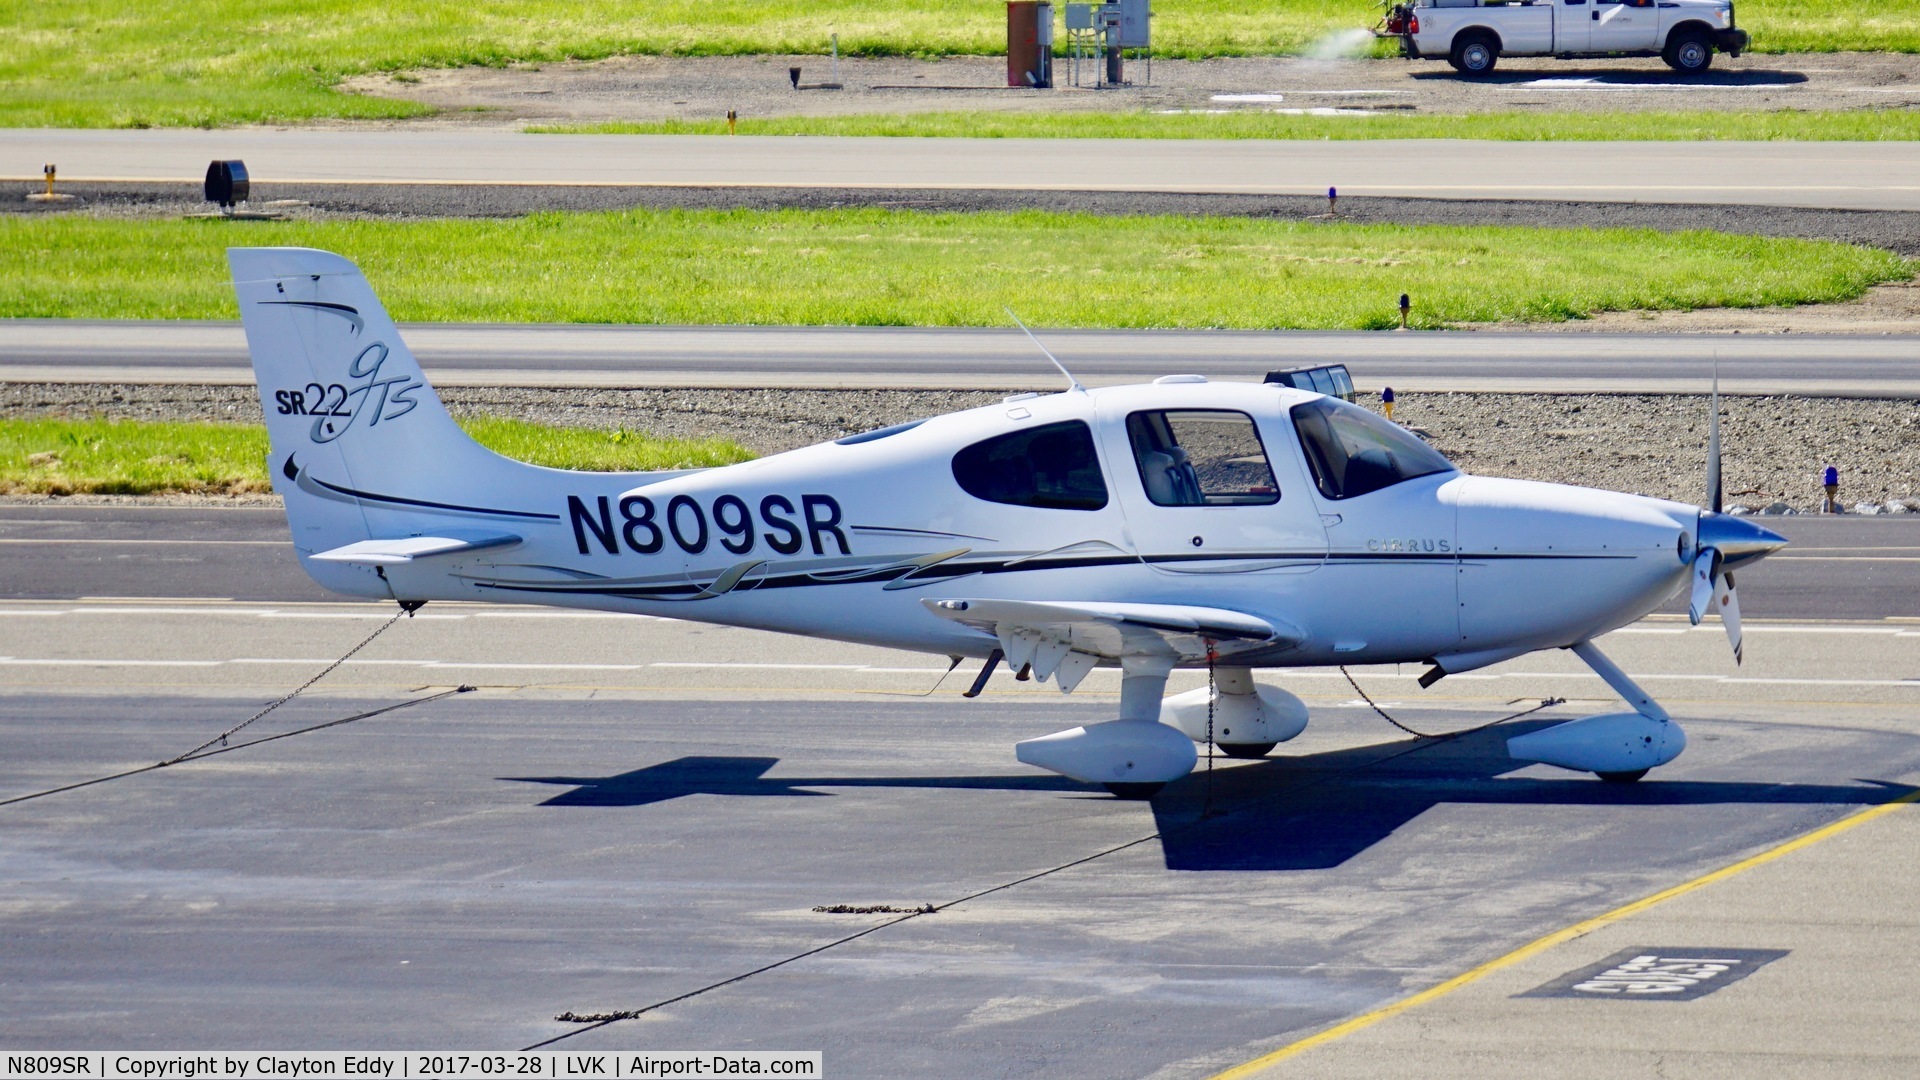 N809SR, 2006 Cirrus SR22 GTS C/N 2129, Livermore Airport California 2017.